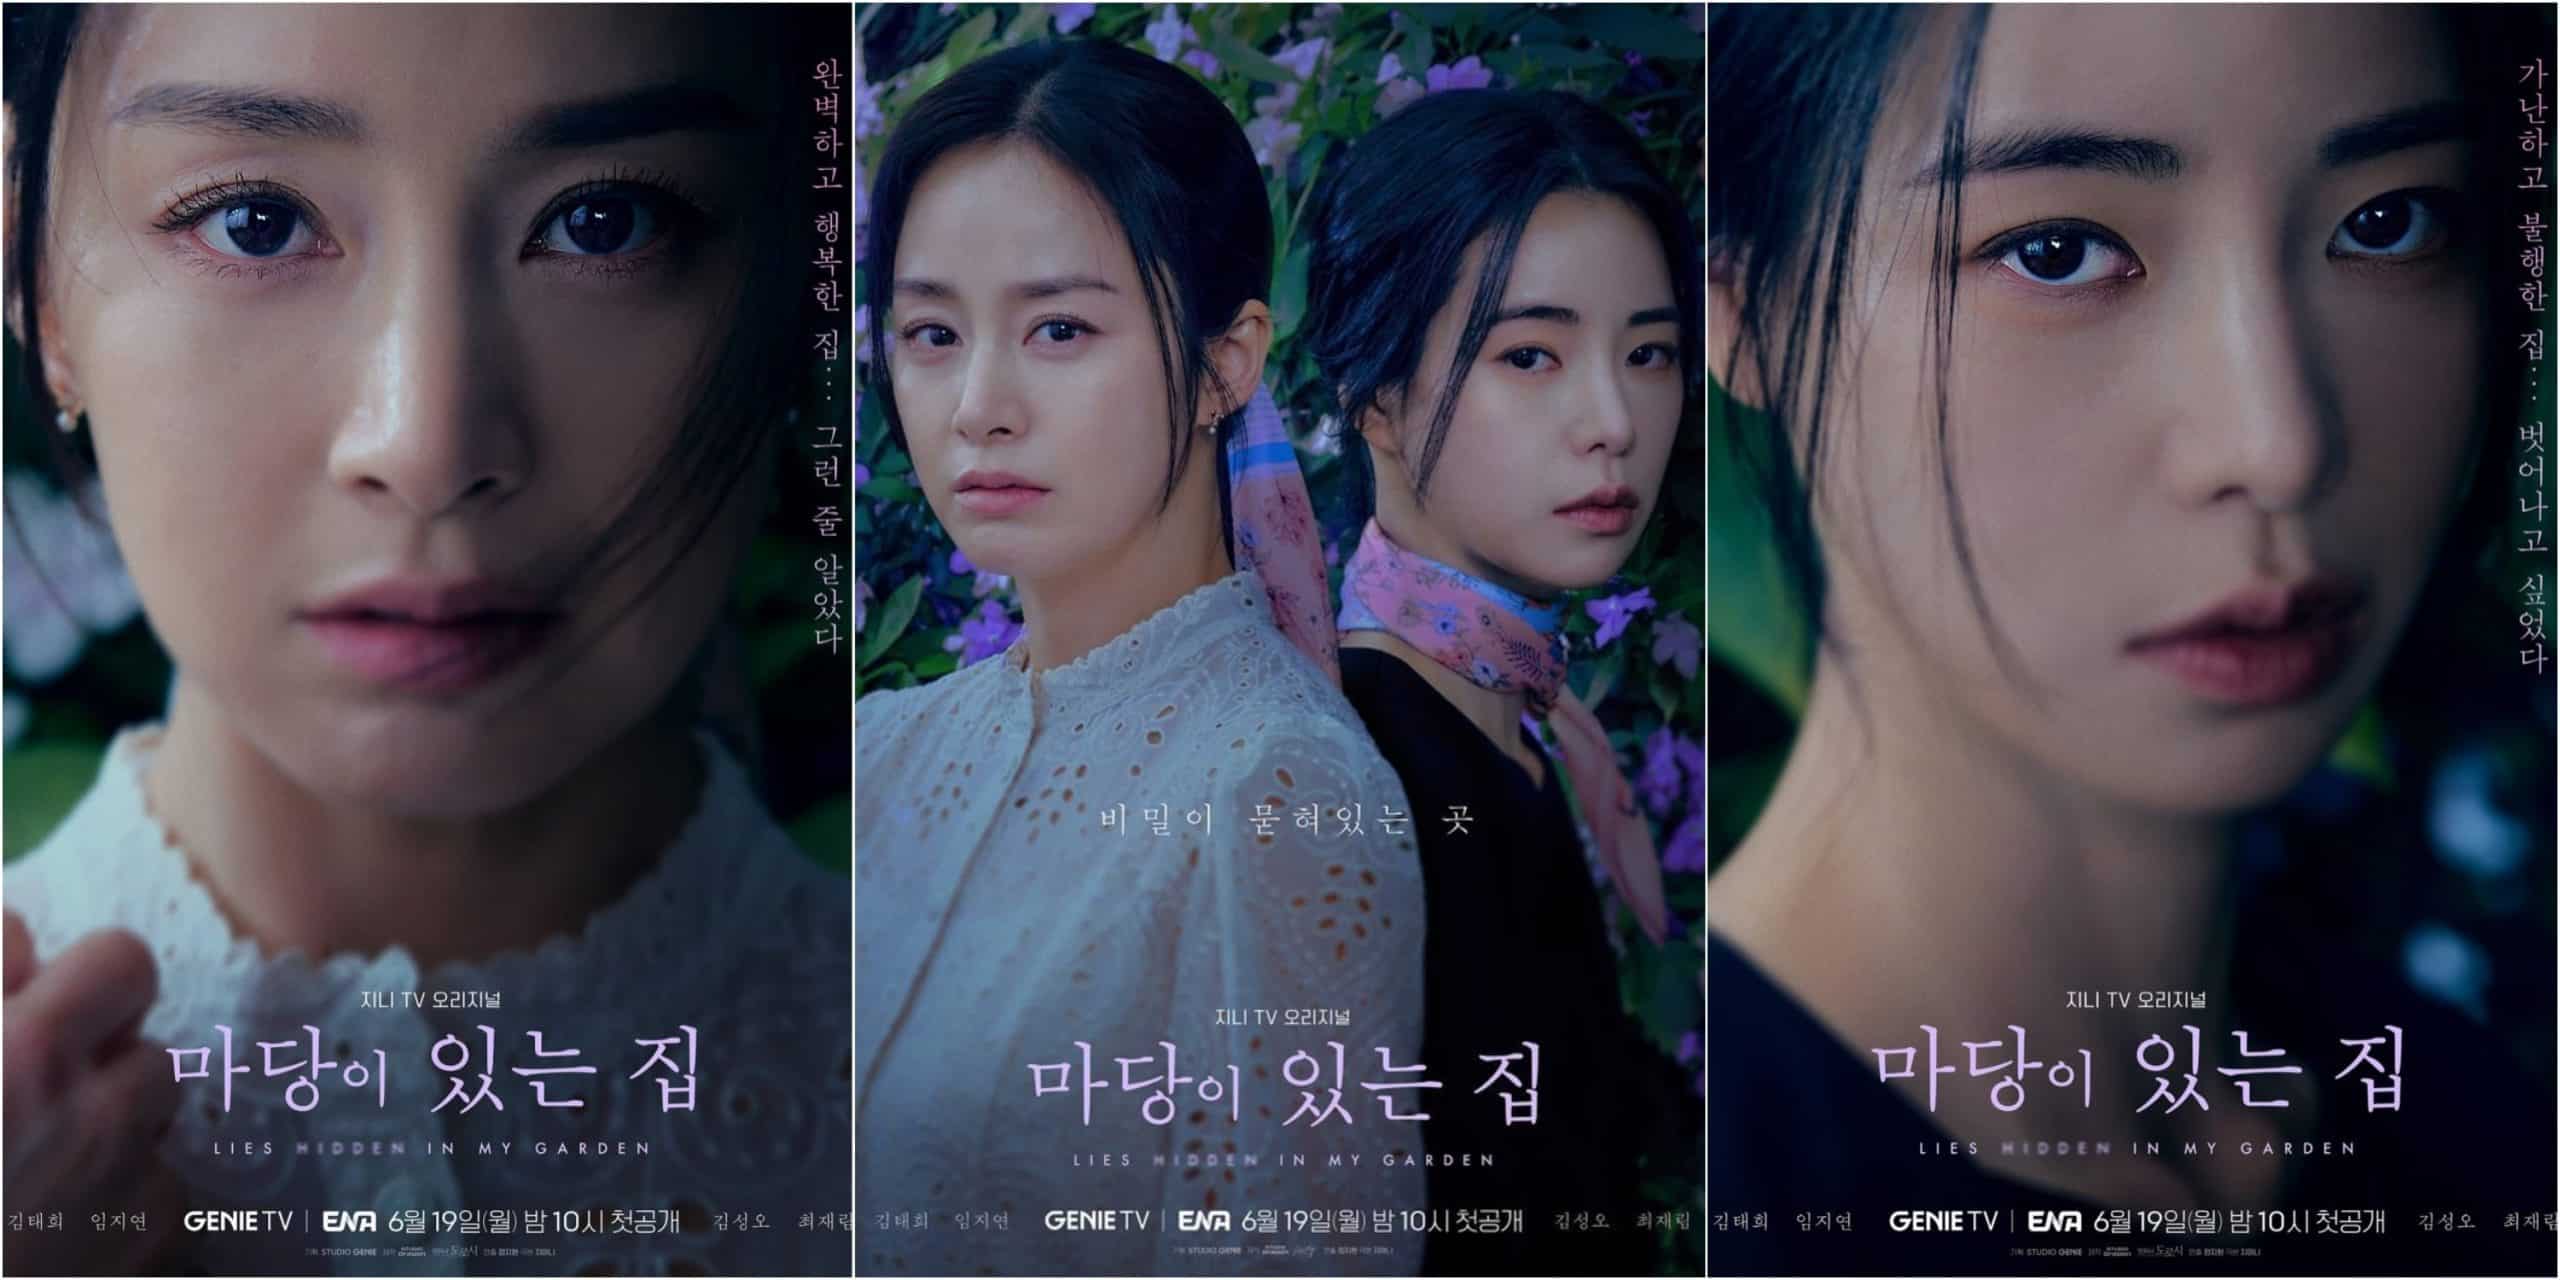 Korean Thriller Drama Lies Hidden in My Garden Episode 1 Release Date